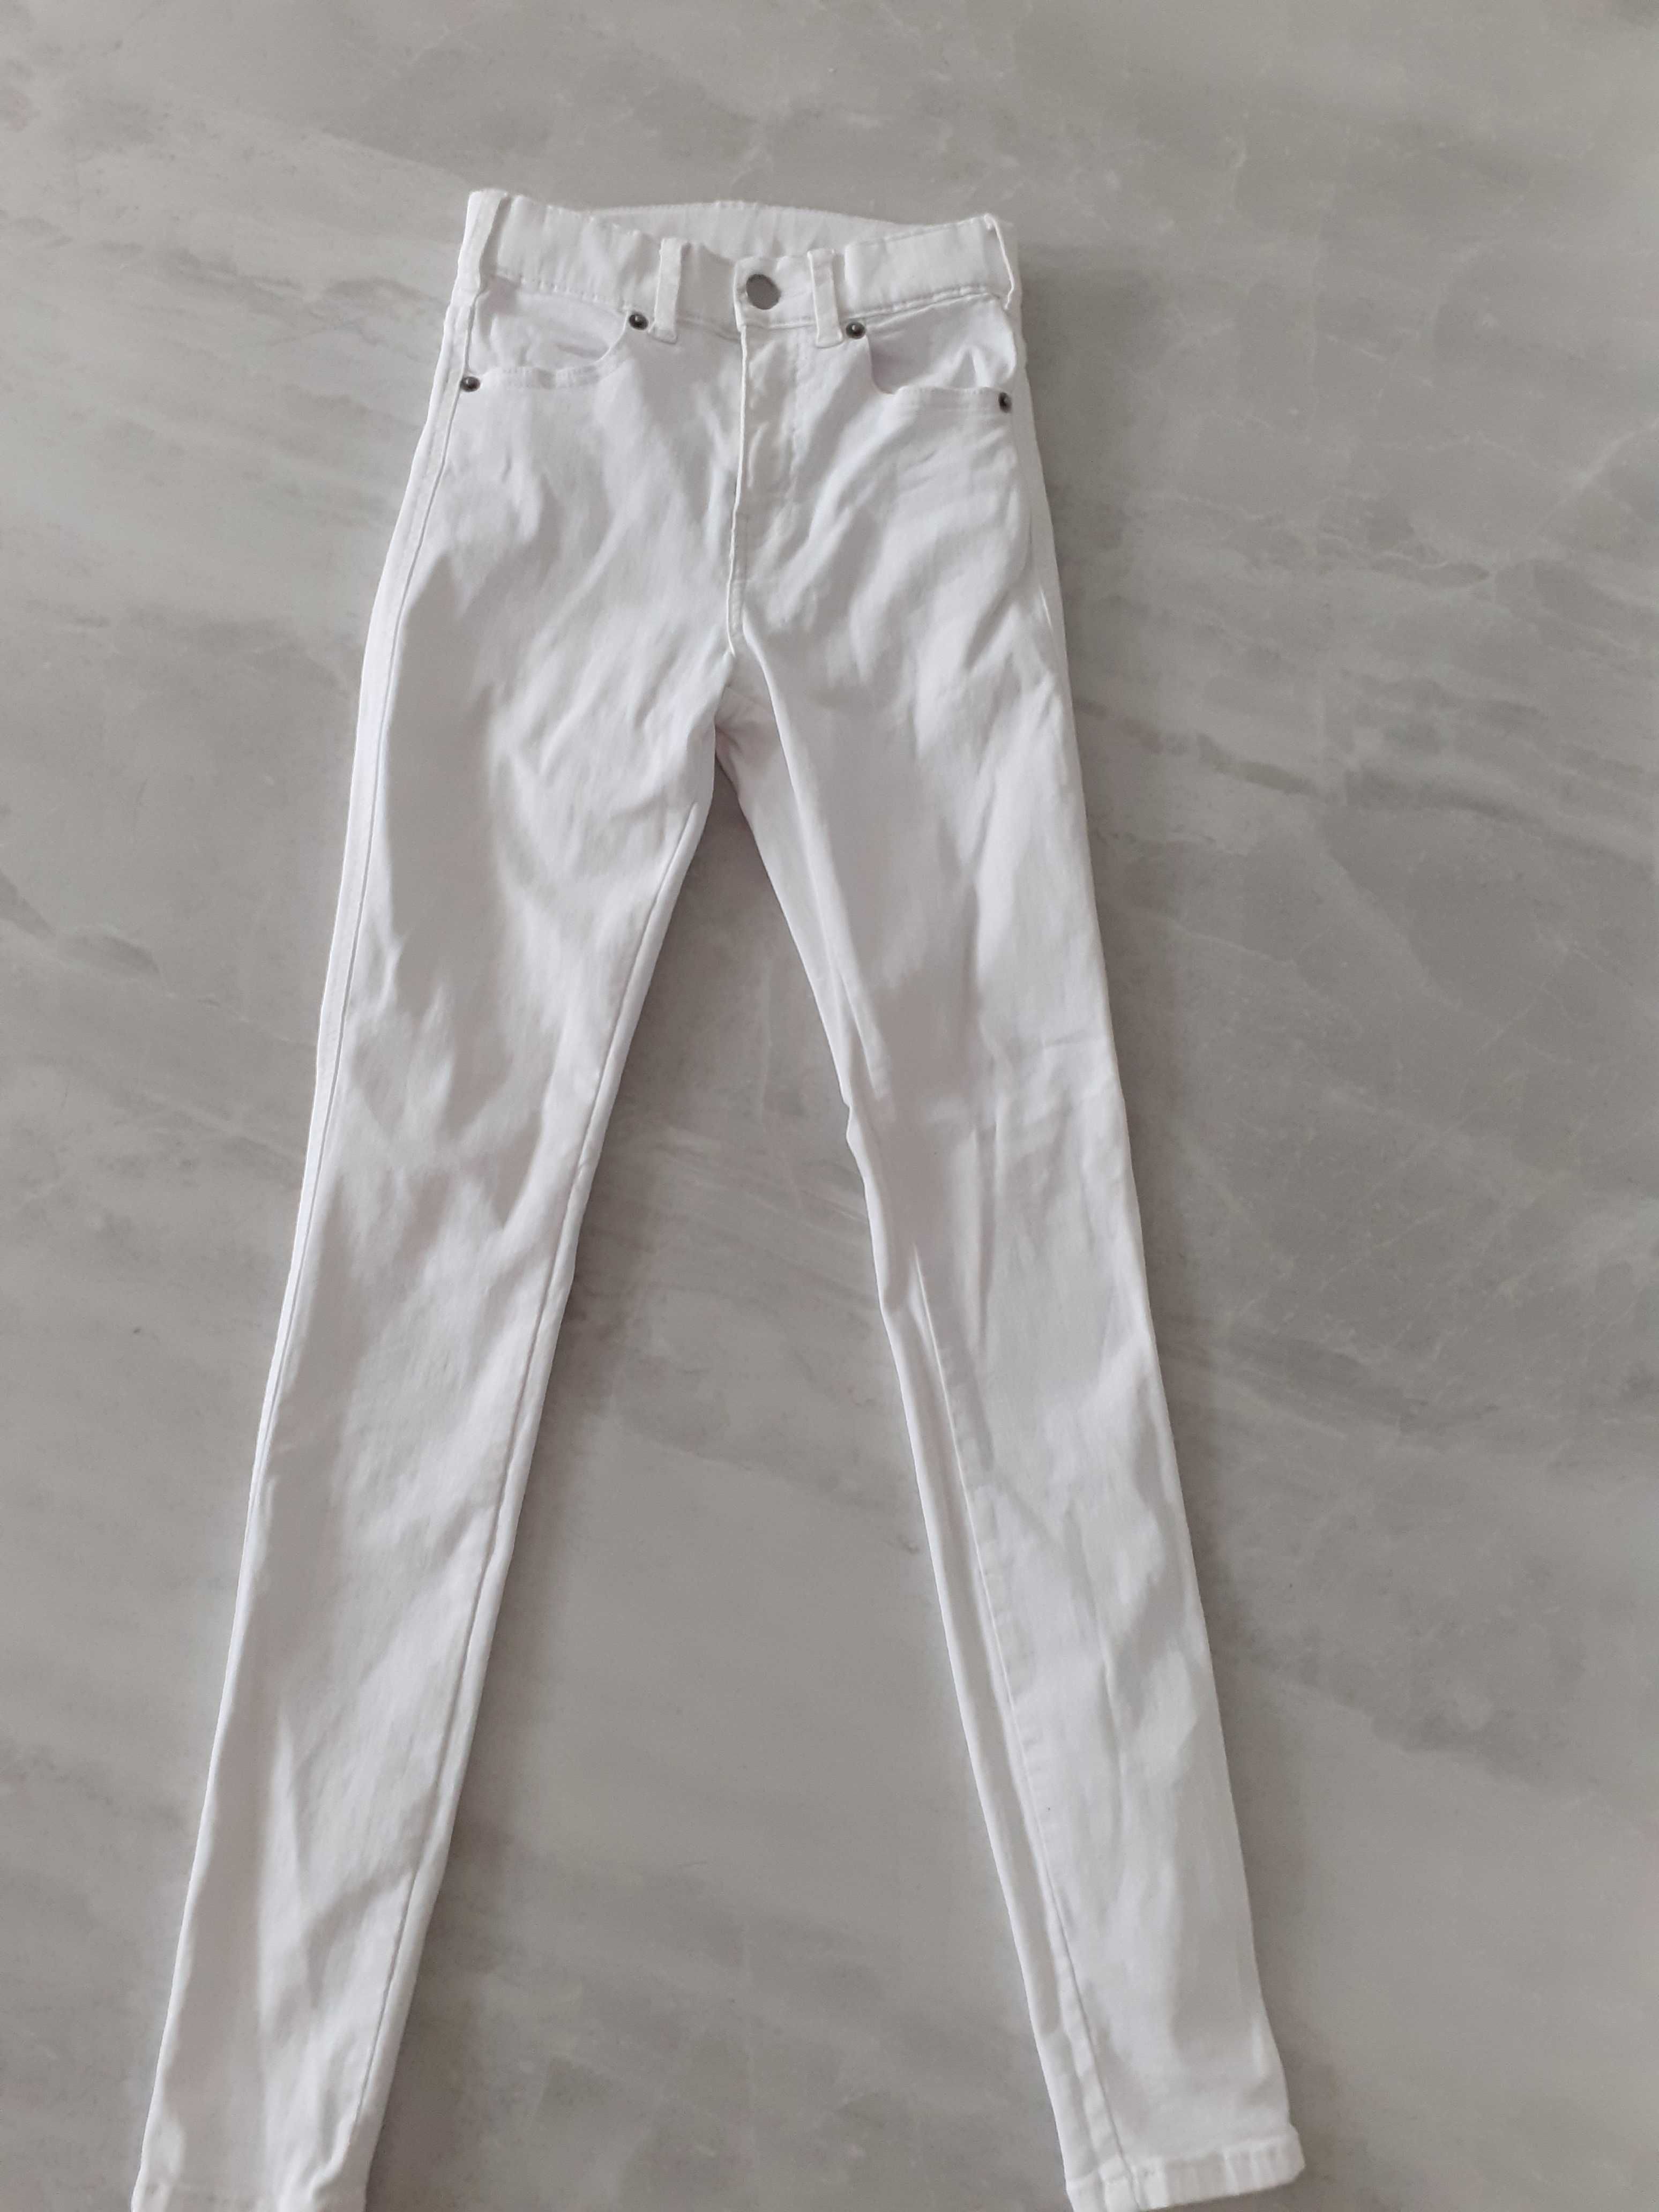 Spodnie jensy biale firmy Drdem rozmiar xs